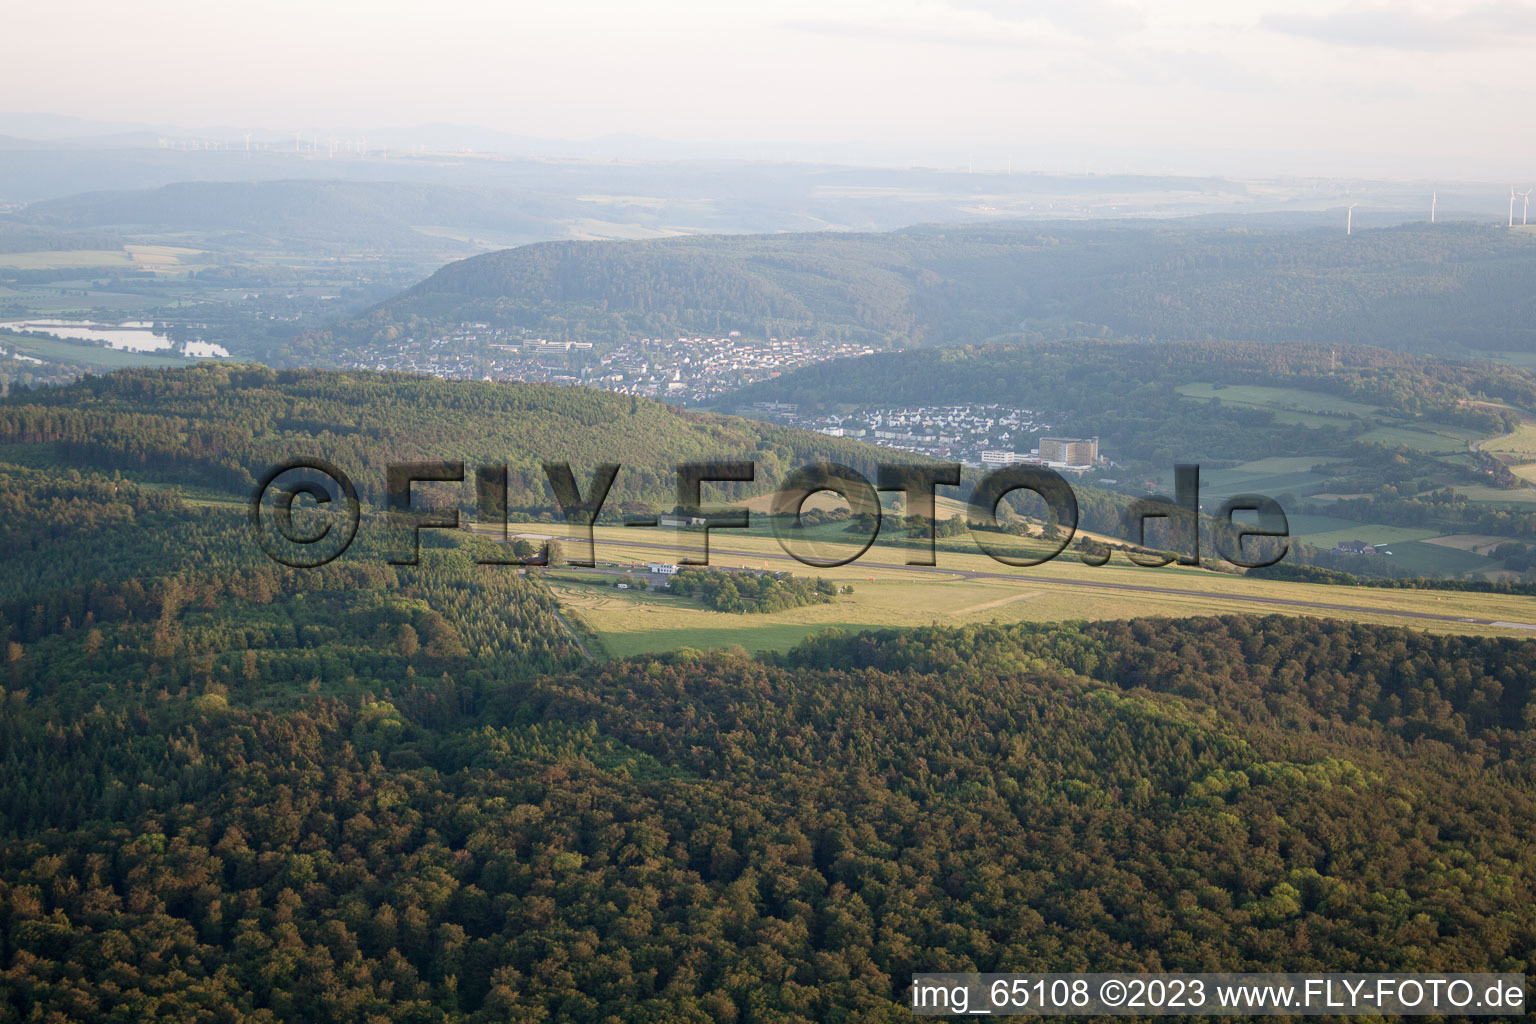 Aerial view of Airfield in Höxter in the state North Rhine-Westphalia, Germany